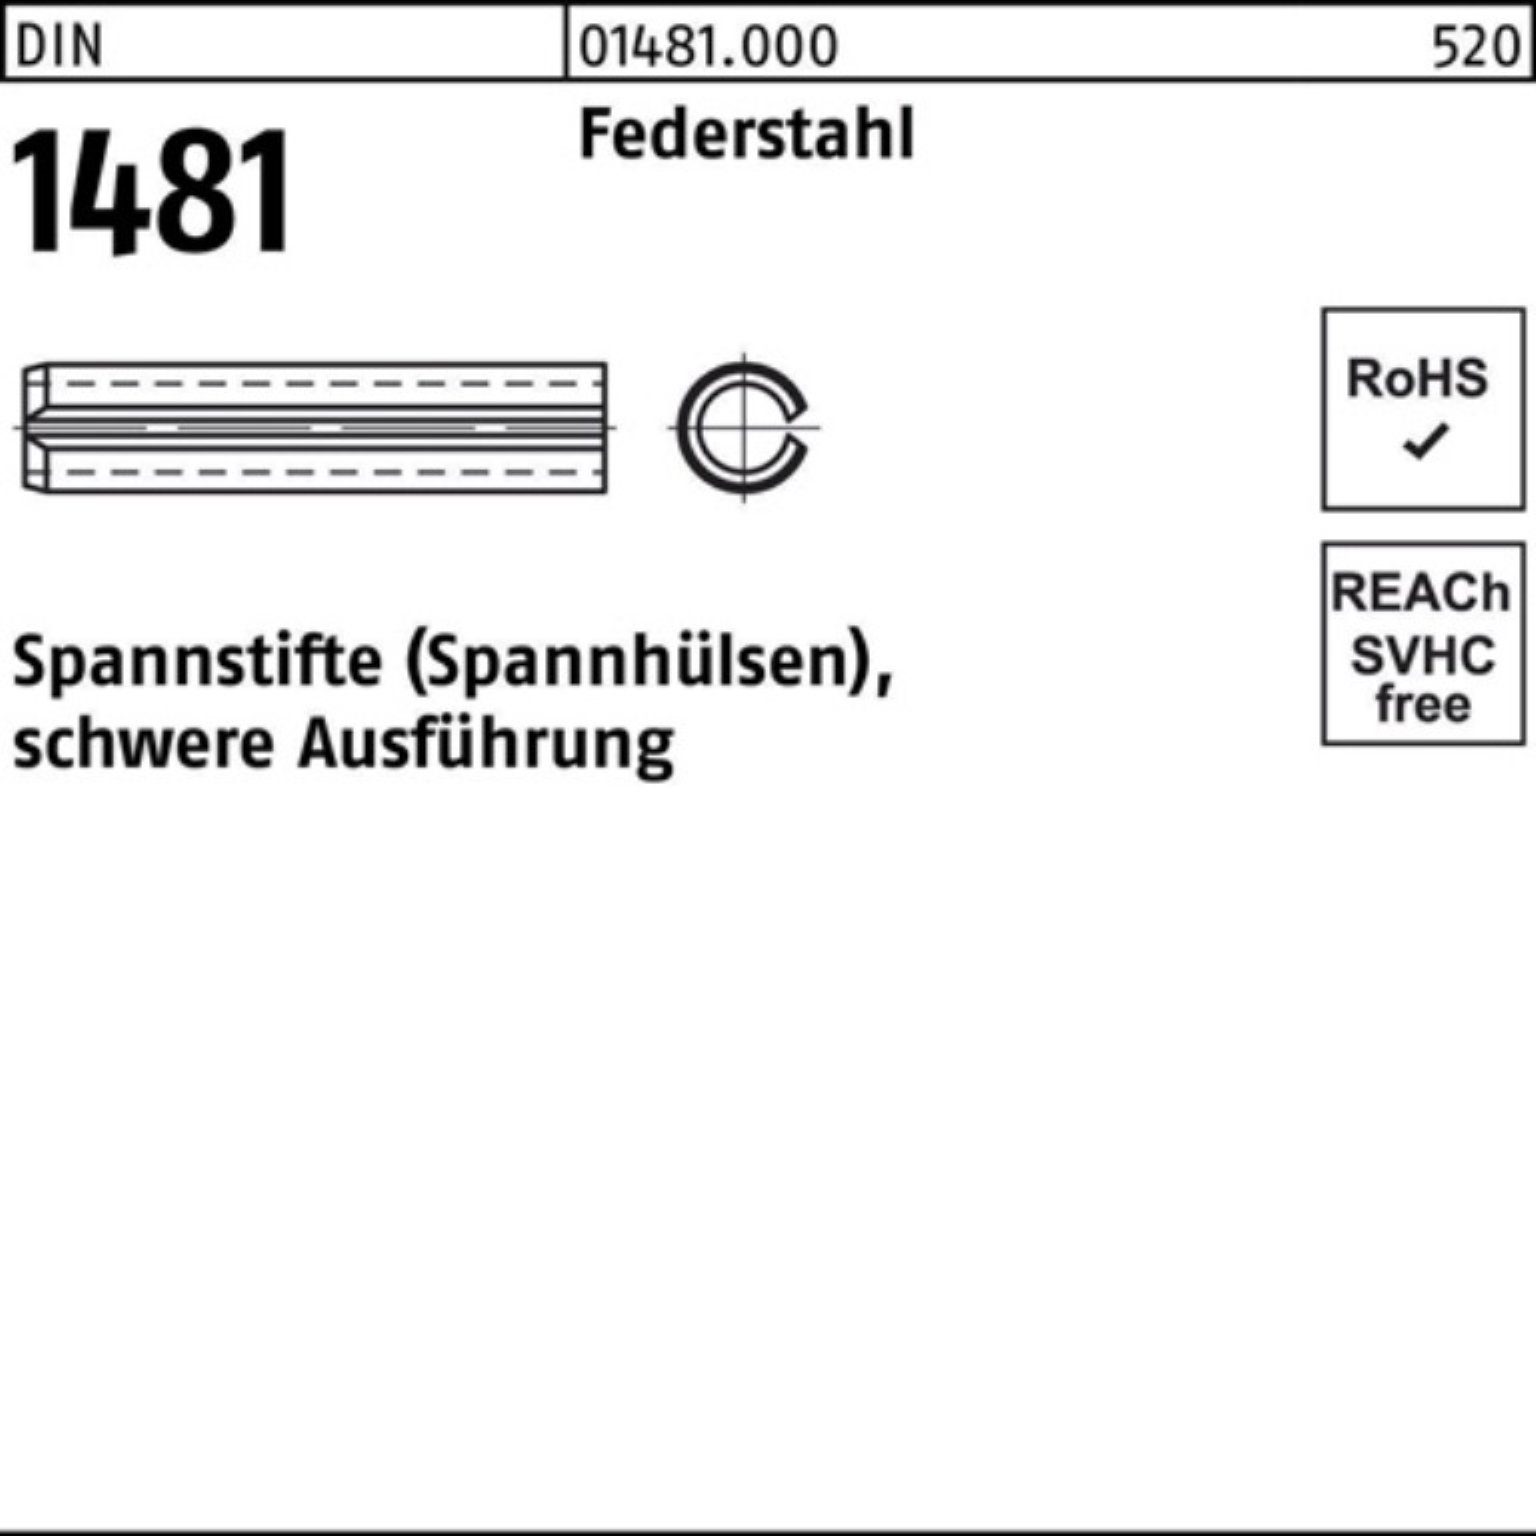 Reyher Spannstift 100er Pack Spannstift DIN 1481 10x 140 Federstahl schwere Ausführung